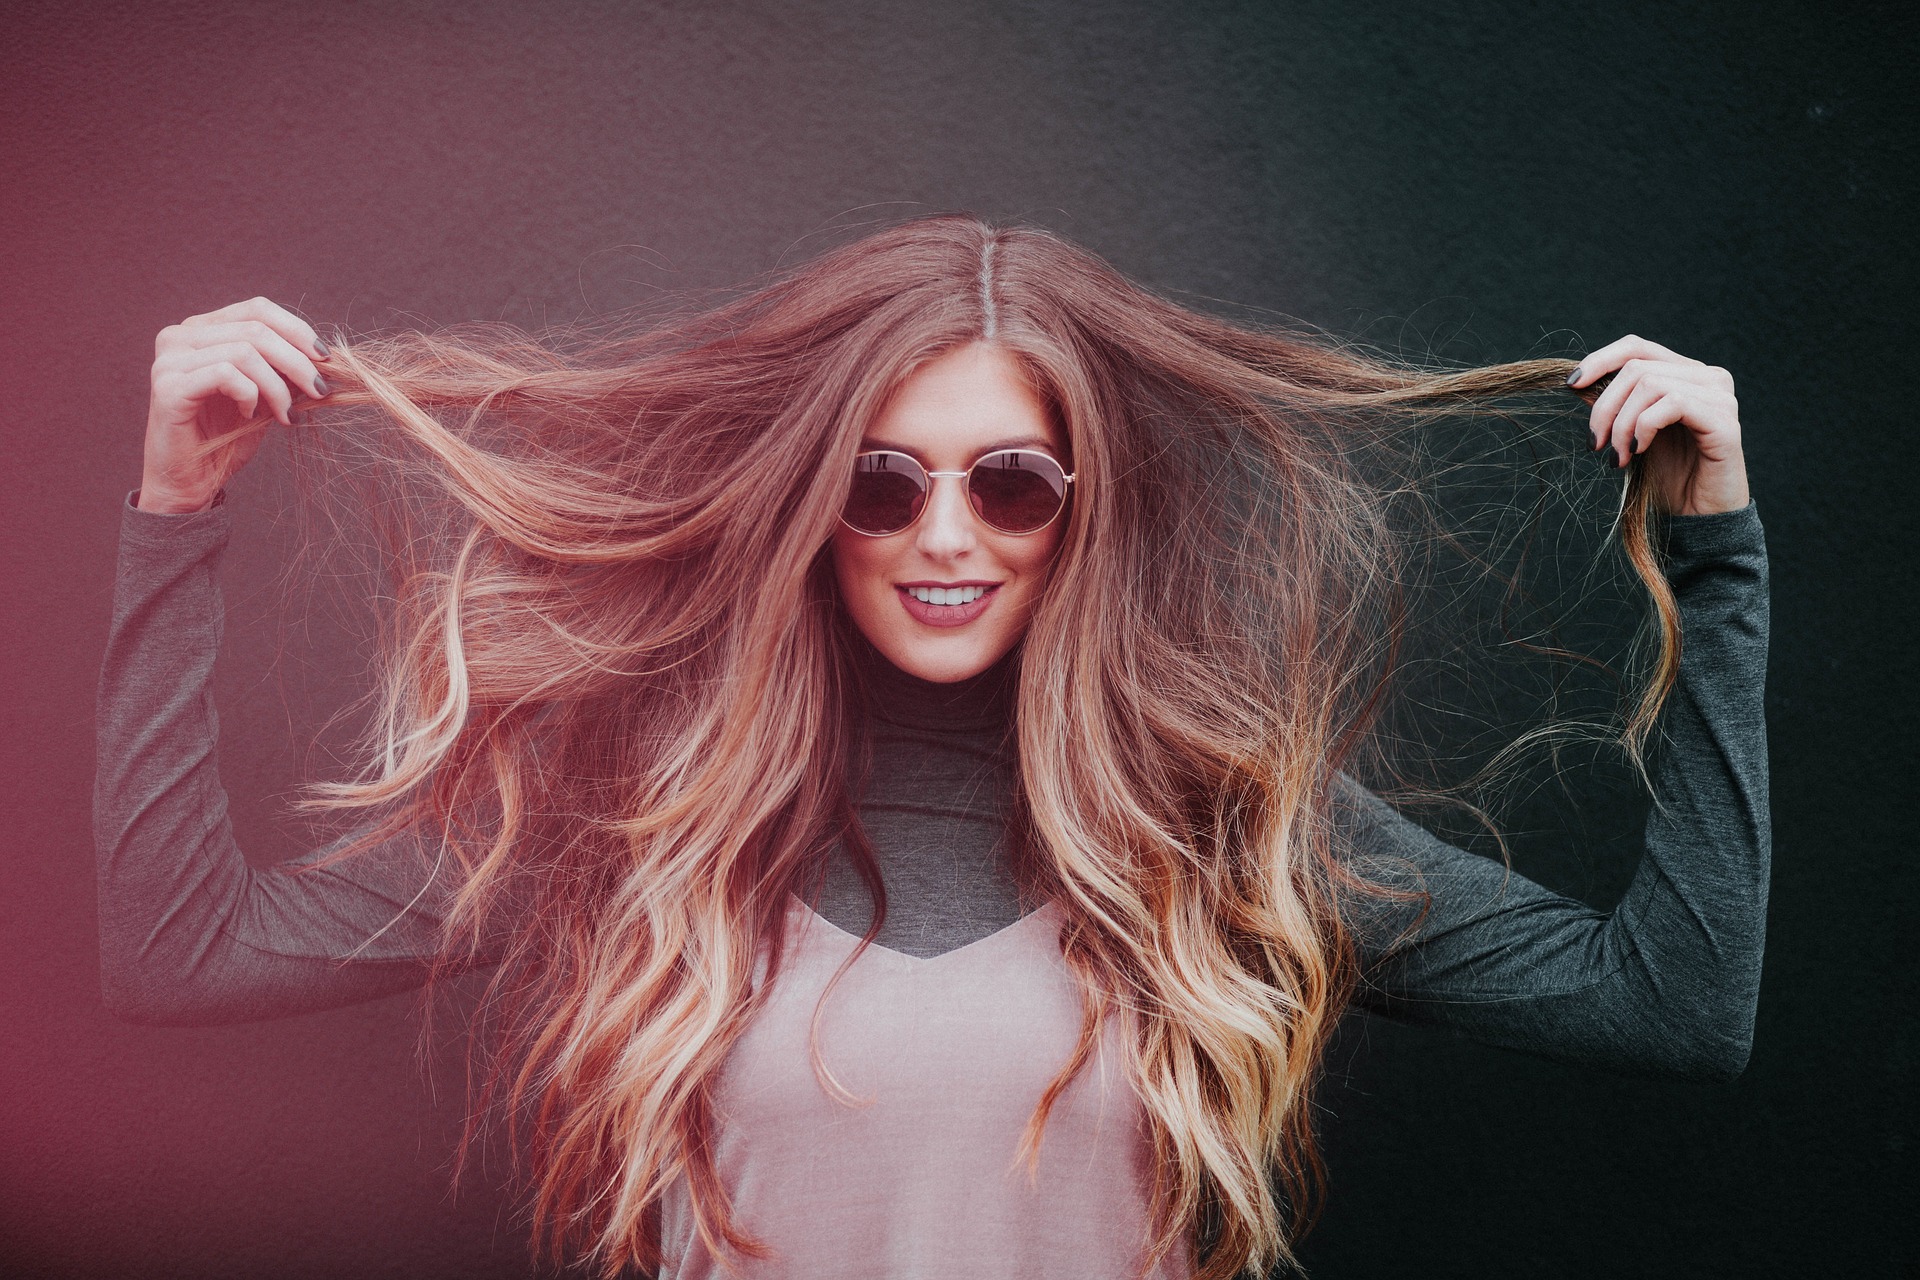 HAARE: Diese Beauty-Tipps für deine Haare musst du ausprobieren!